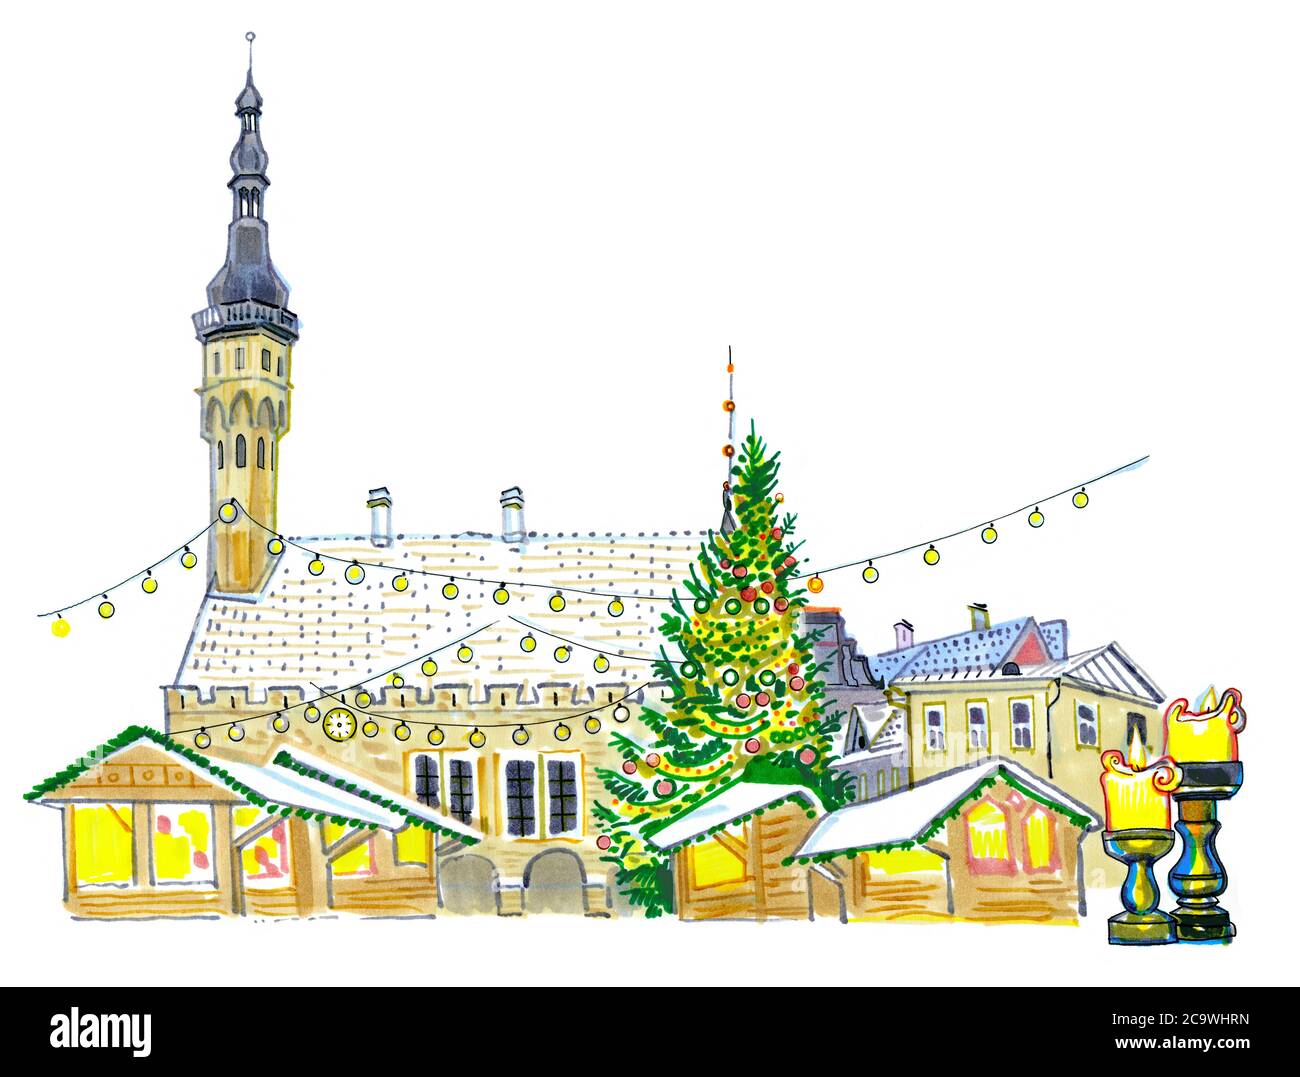 Weihnachtsmarkt am Rathausplatz in Tallinn, Estland. Neujahrsbaum, Feiertagsbeleuchtung, Kerzen, Schnee auf den Dächern. Von Hand gezeichnet skizzenhaft Stockfoto